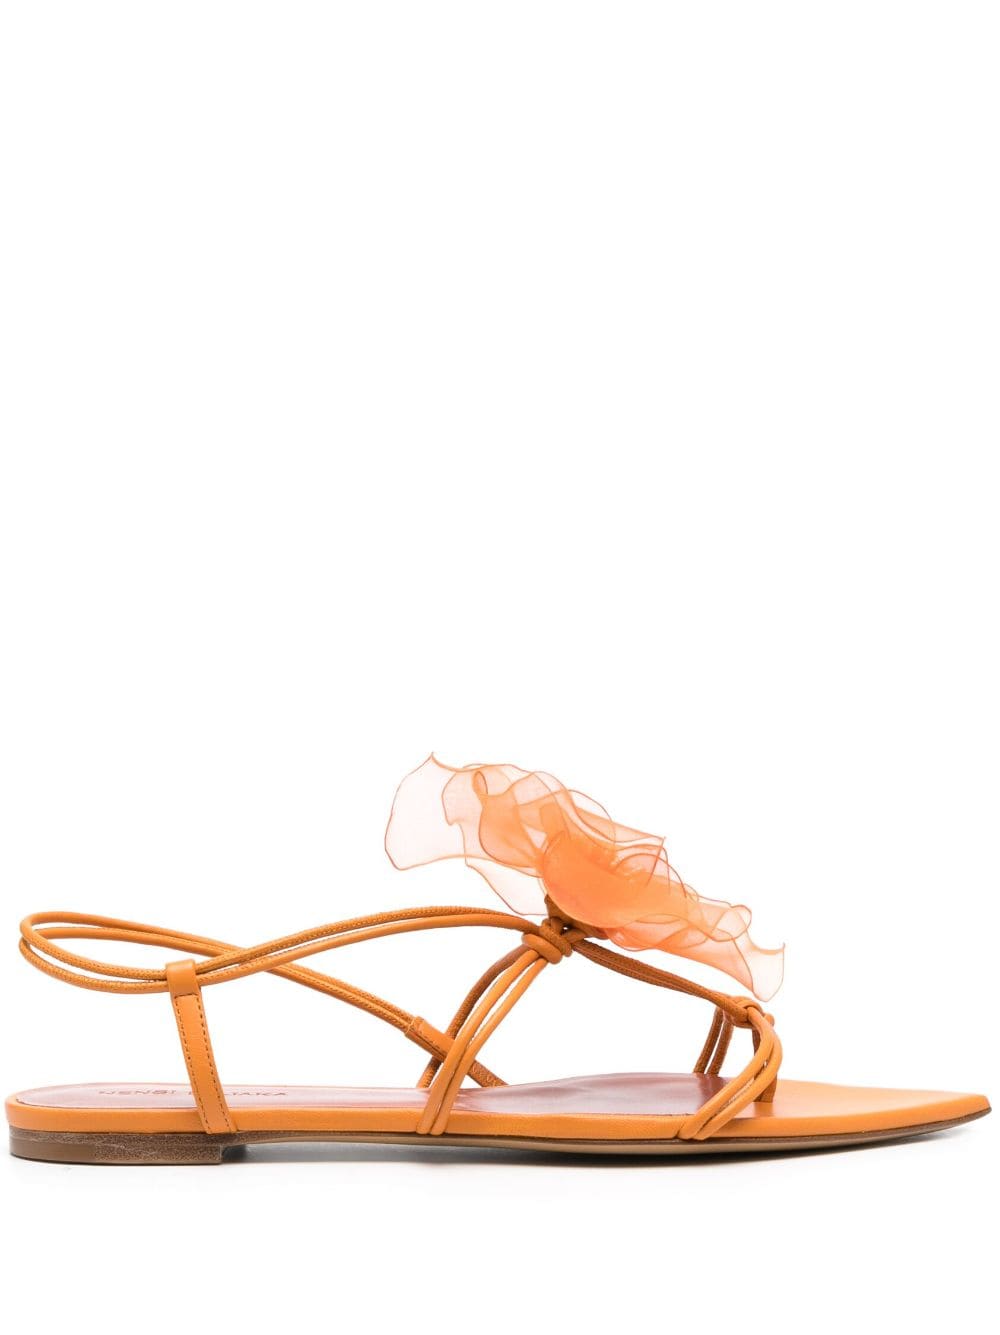 Nensi Dojaka faux-flower leather sandals - Orange von Nensi Dojaka